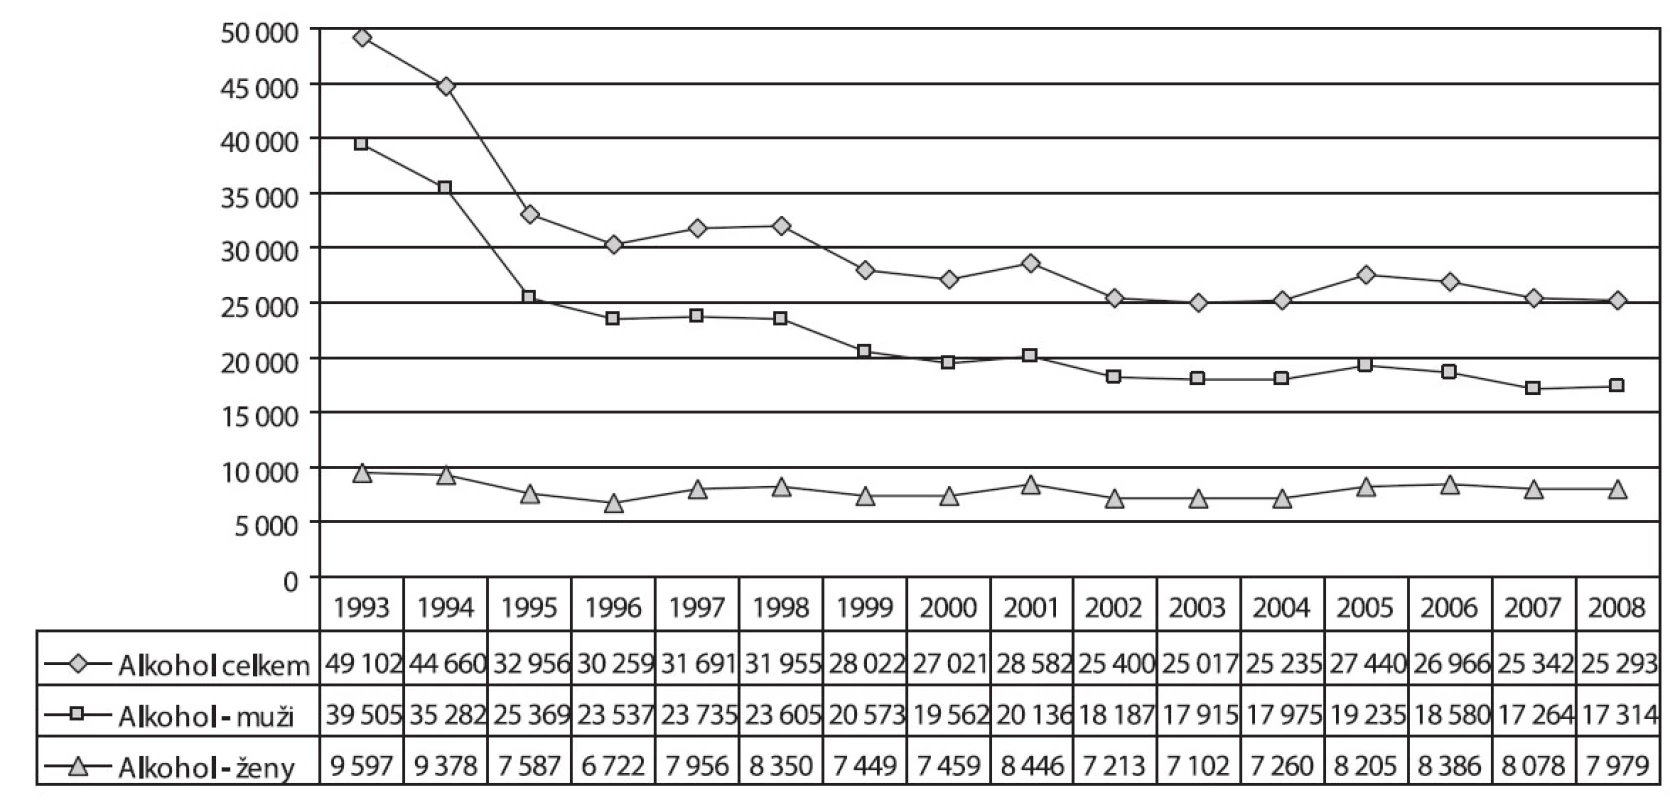 Vývoj počtu pacientů užívajících alkohol podle pohlaví v letech 1993–2008
Fig. 3. Trends in the numbers of alcohol users treated, by sex, 1993–2008